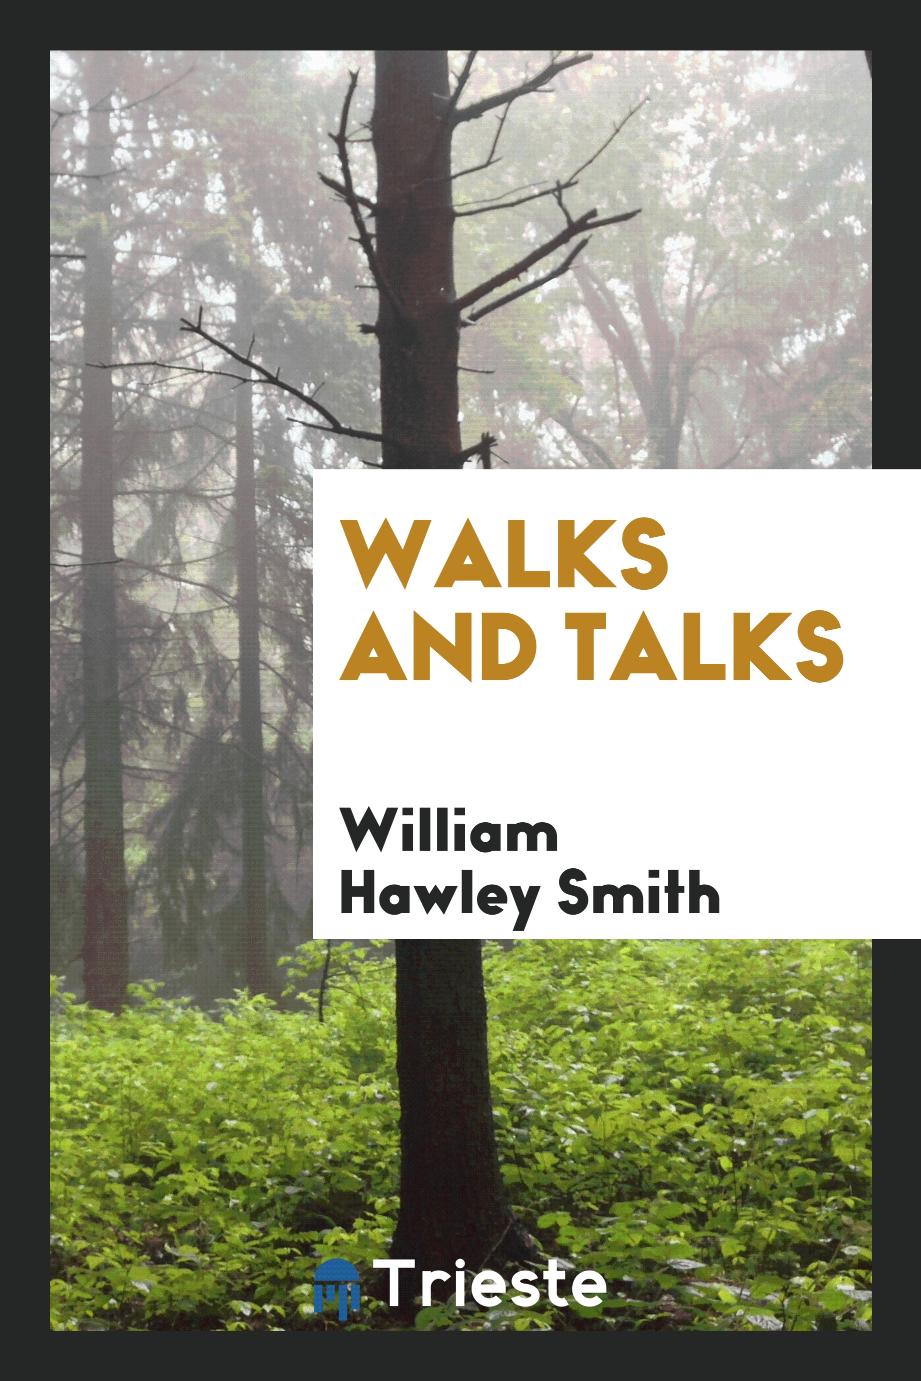 Walks and talks